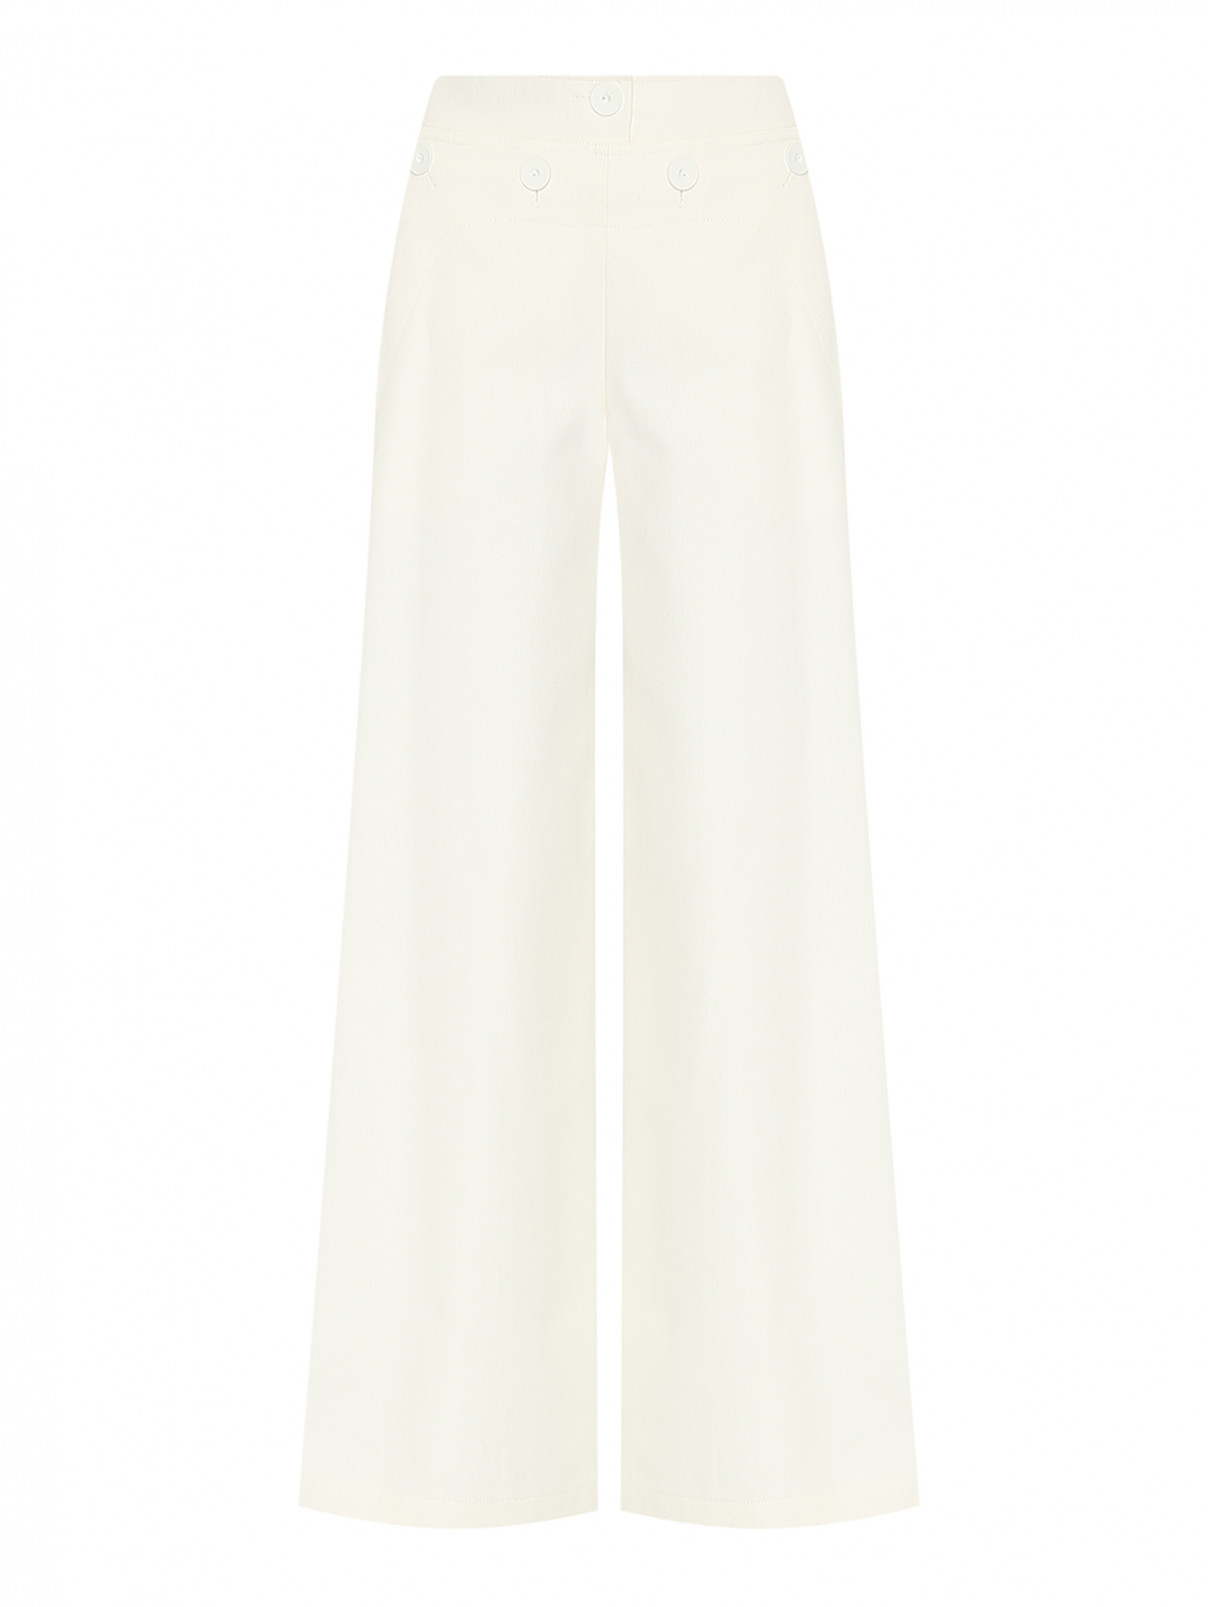 Однотонные брюки с пуговицами Max Mara  –  Общий вид  – Цвет:  Белый